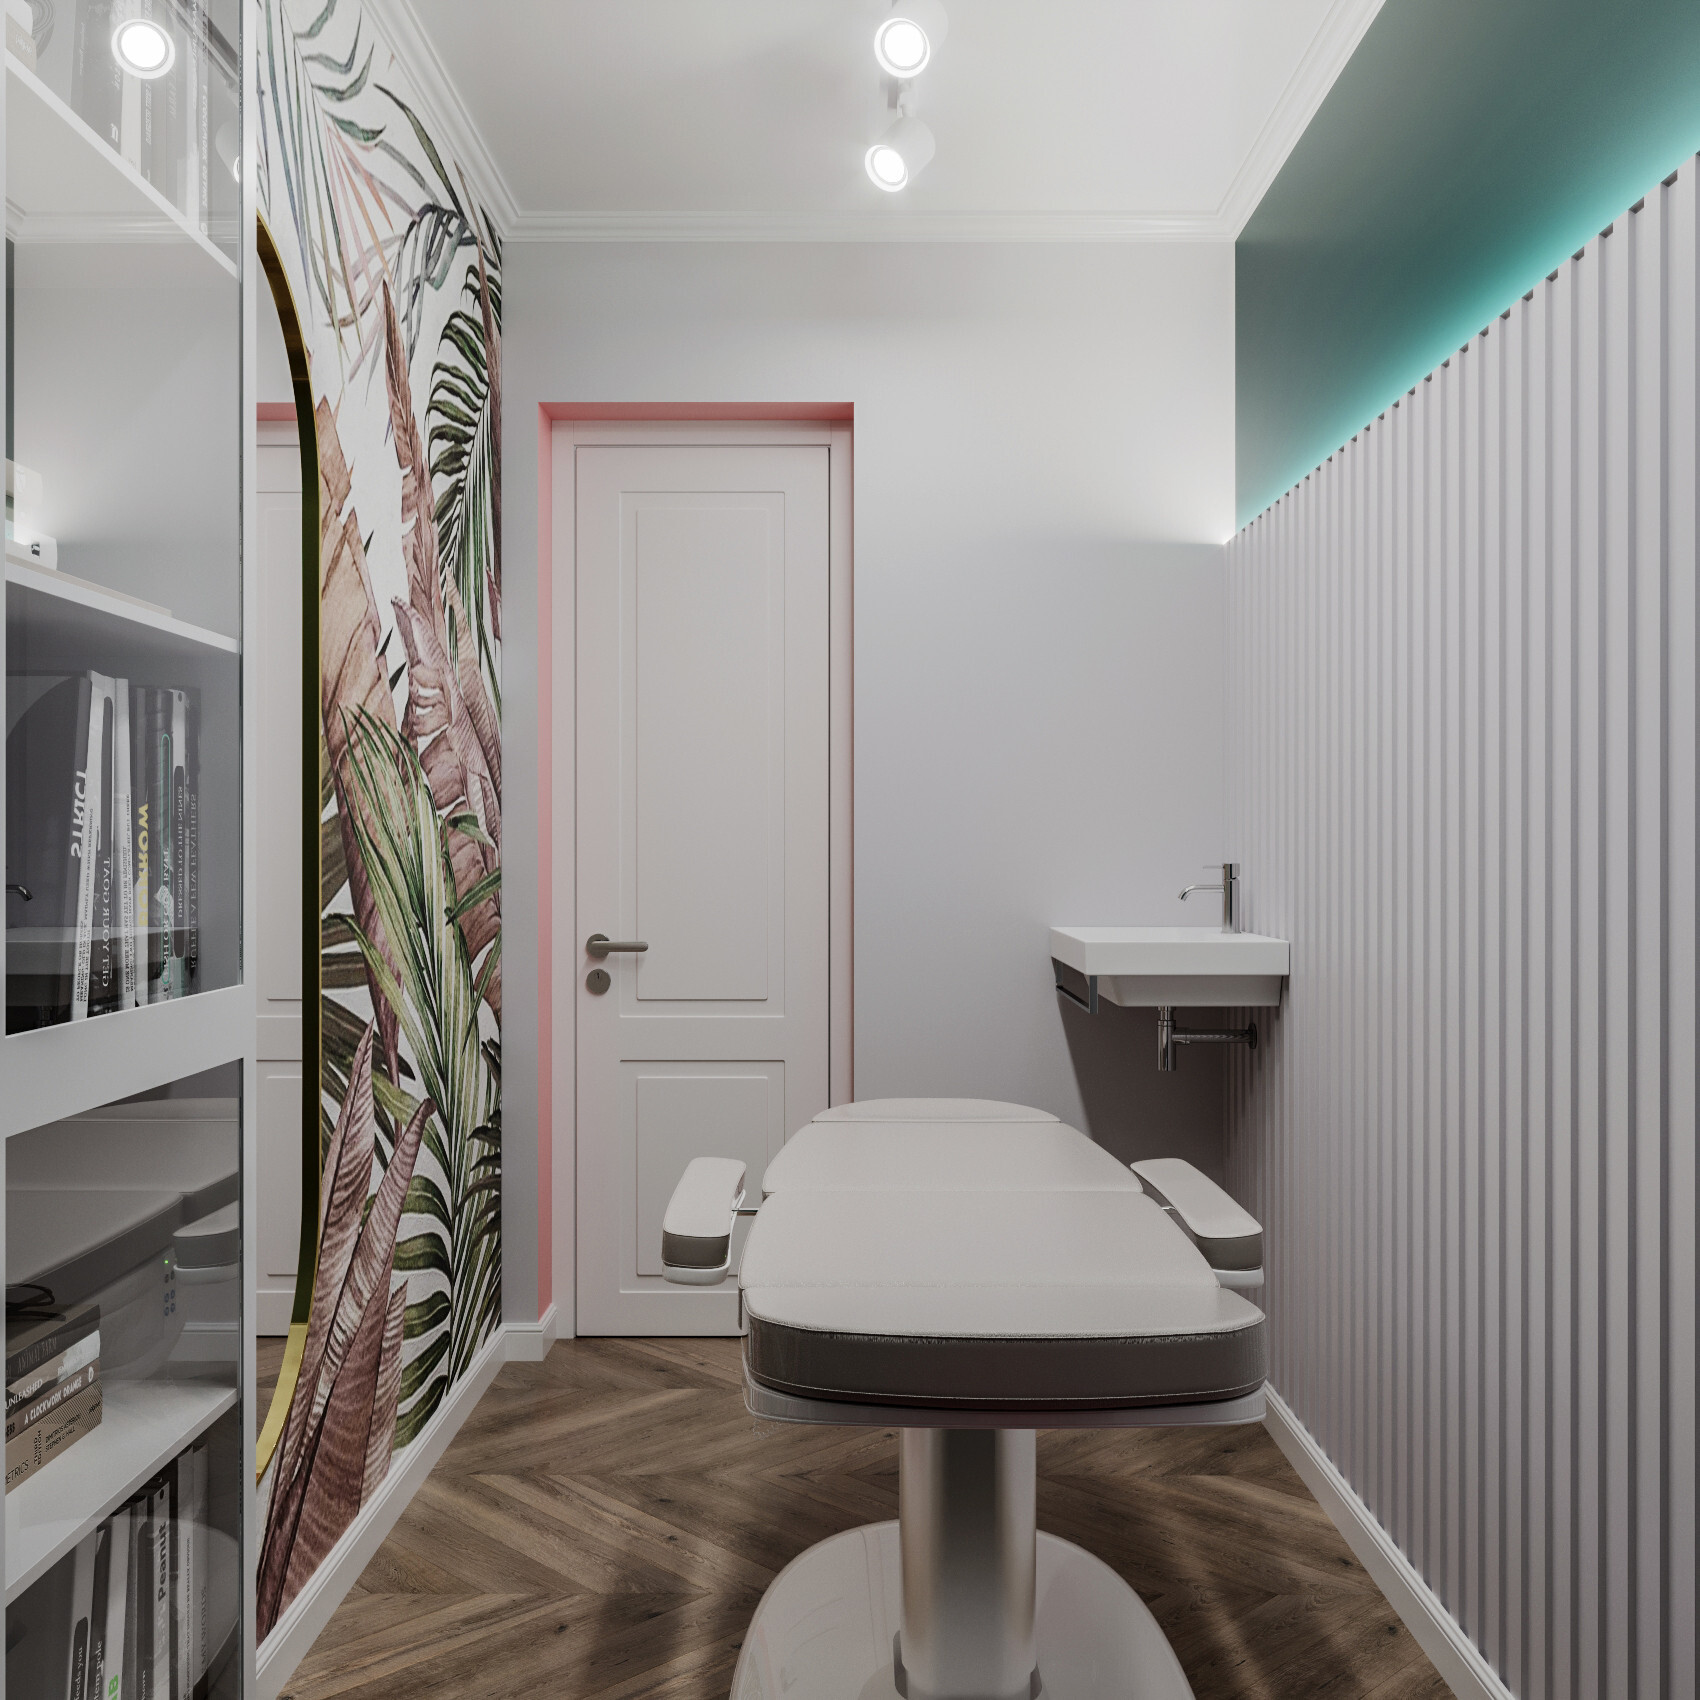 Интерьер ванной с проходной, вертикальными жалюзи, рейками с подсветкой и подсветкой светодиодной